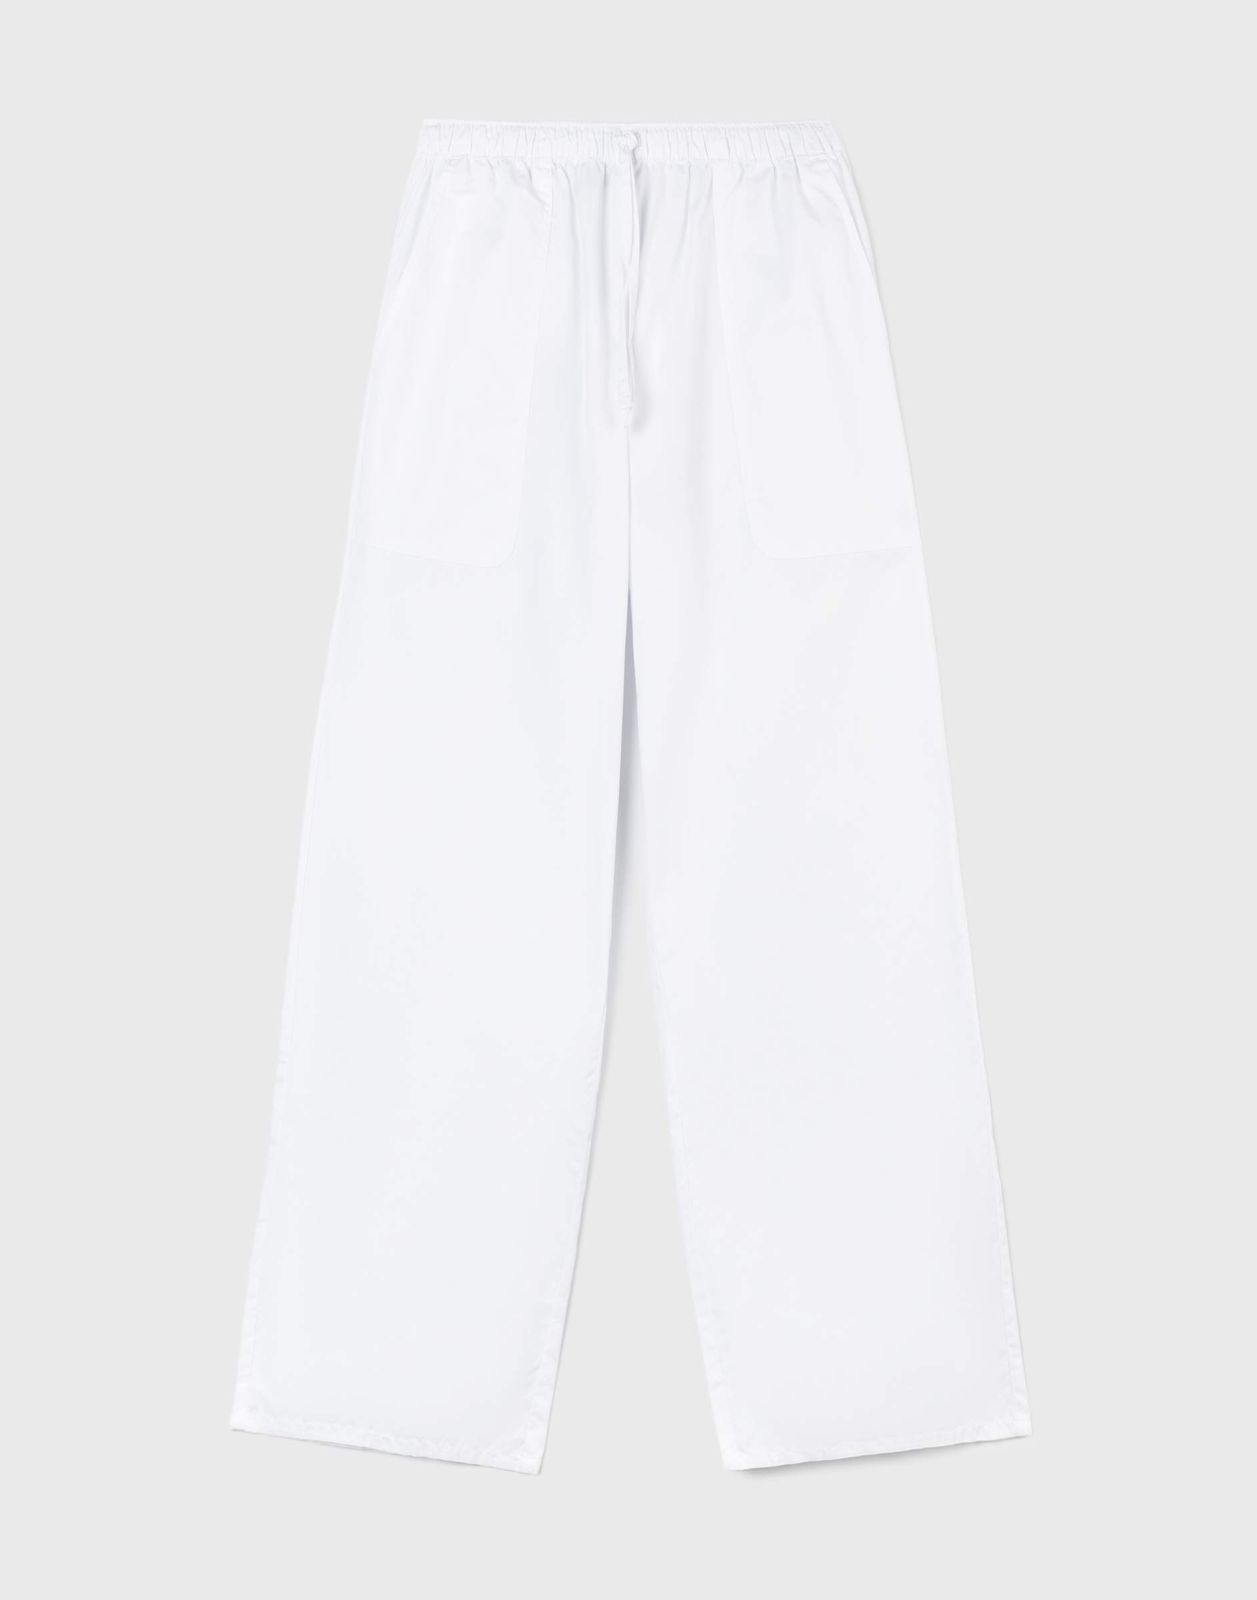 Брюки женские Gloria Jeans GPT009565 белый XS/164